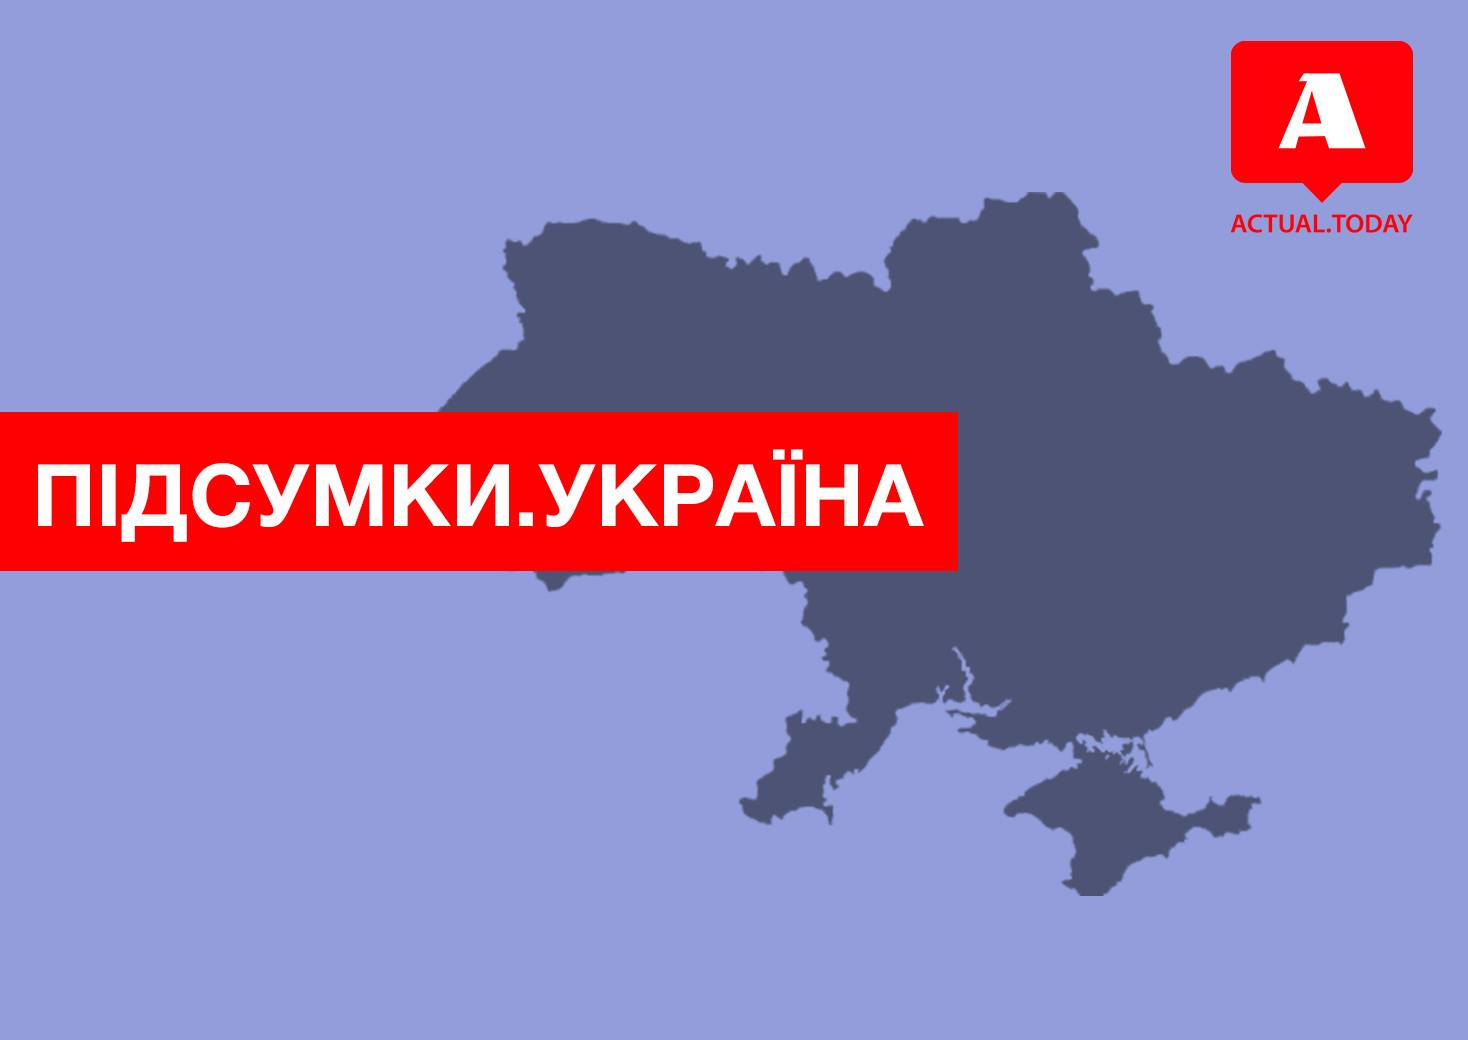 Утилизация “Запорожья”, церковное противостояние, партию Саакашвили не пустили на выборы – итоги выходных